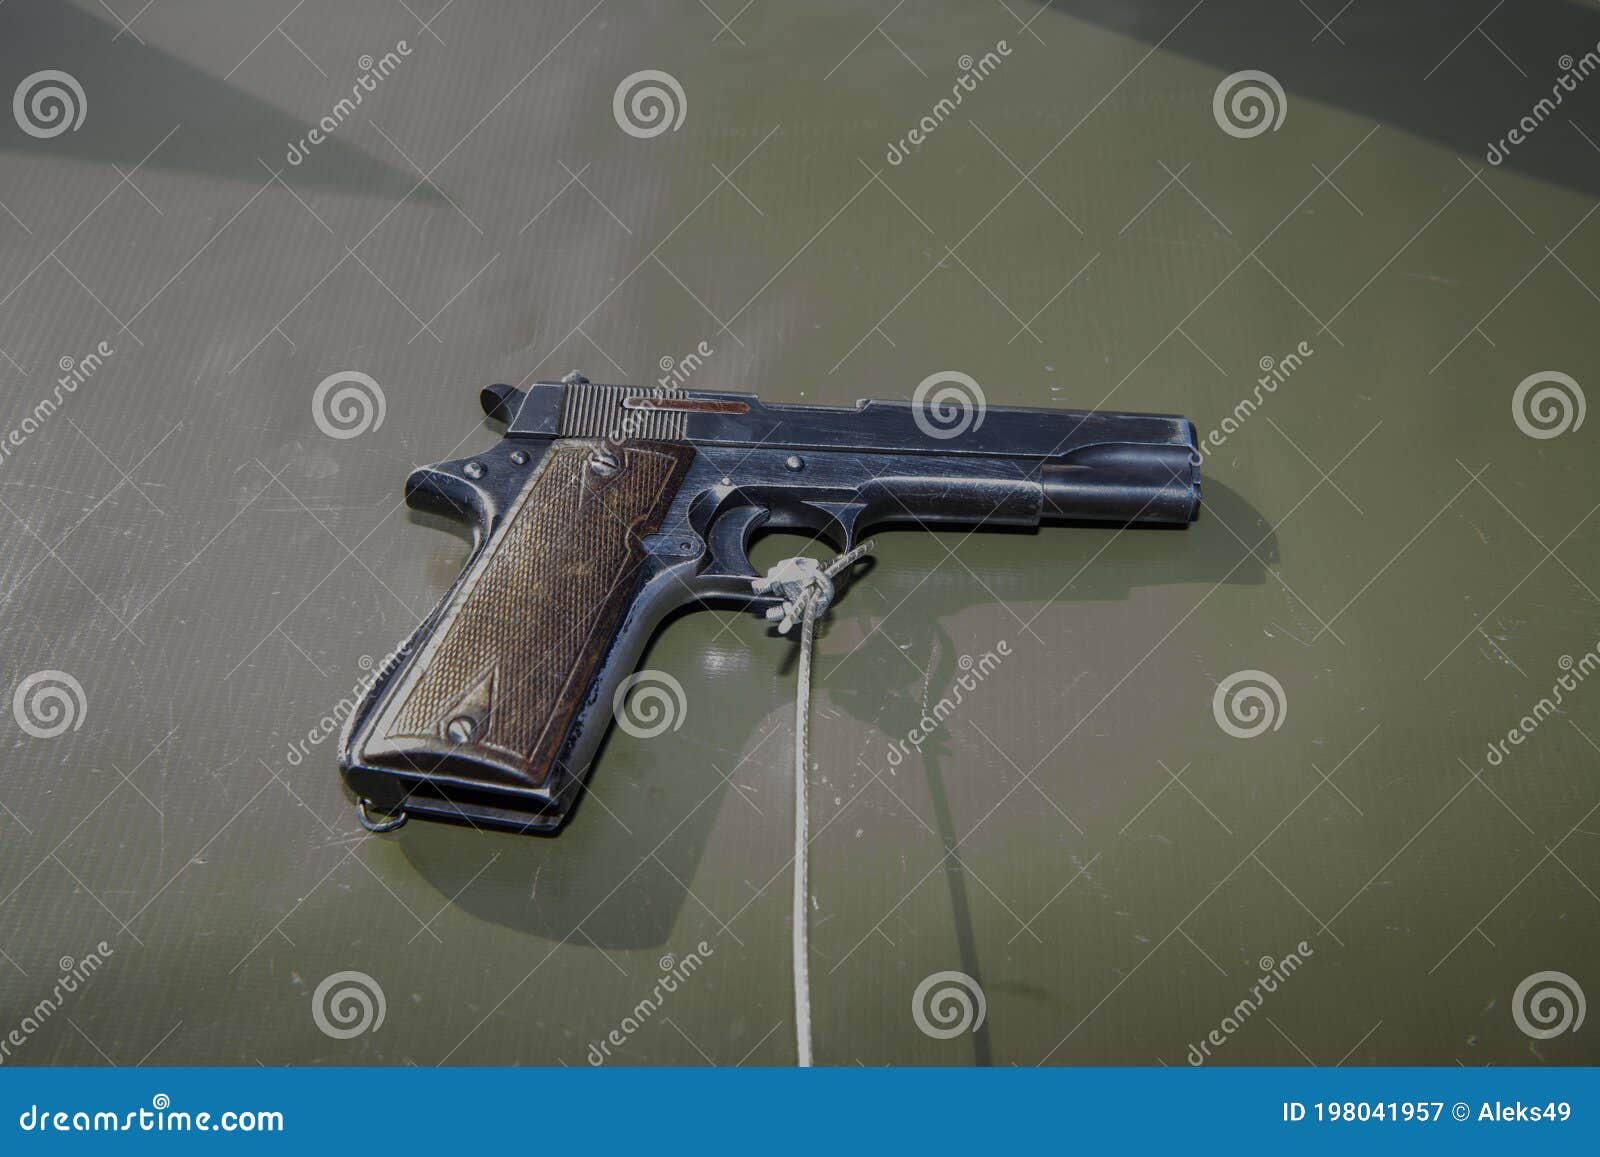 9mm star pistol